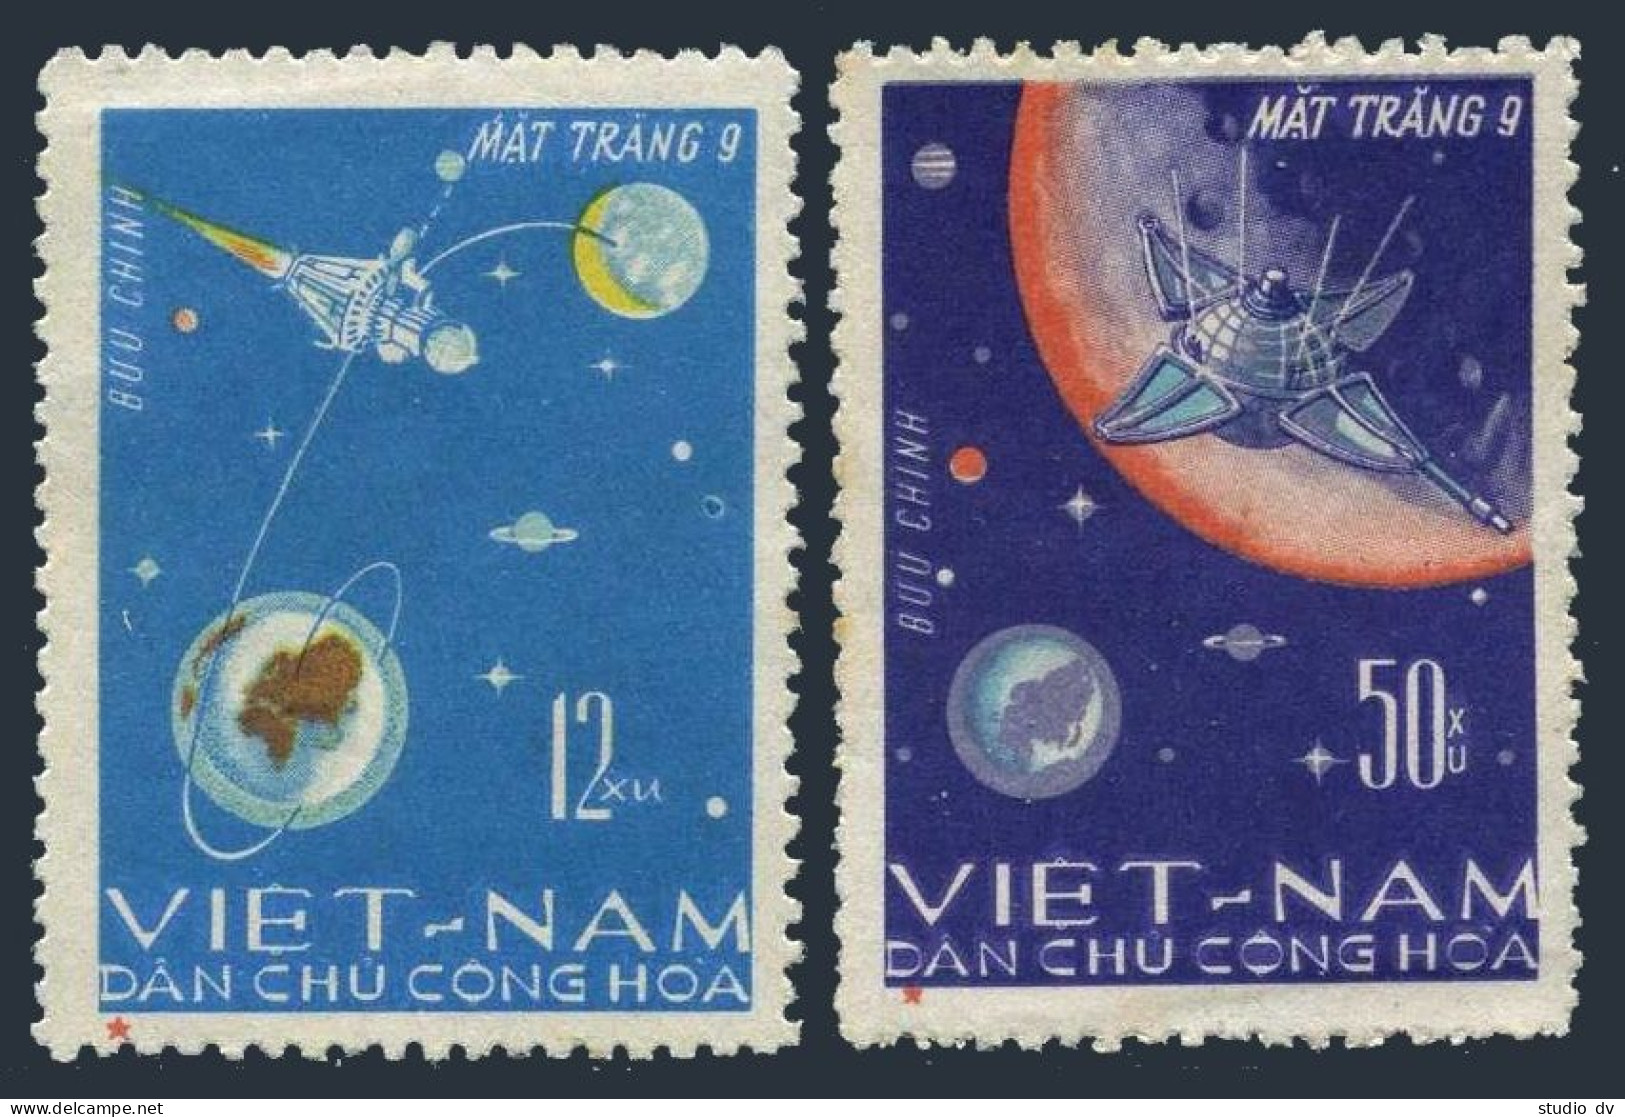 Viet Nam 429-430, MNH. Michel 448-449. Space Achievements, 1966. Luna 9. - Viêt-Nam